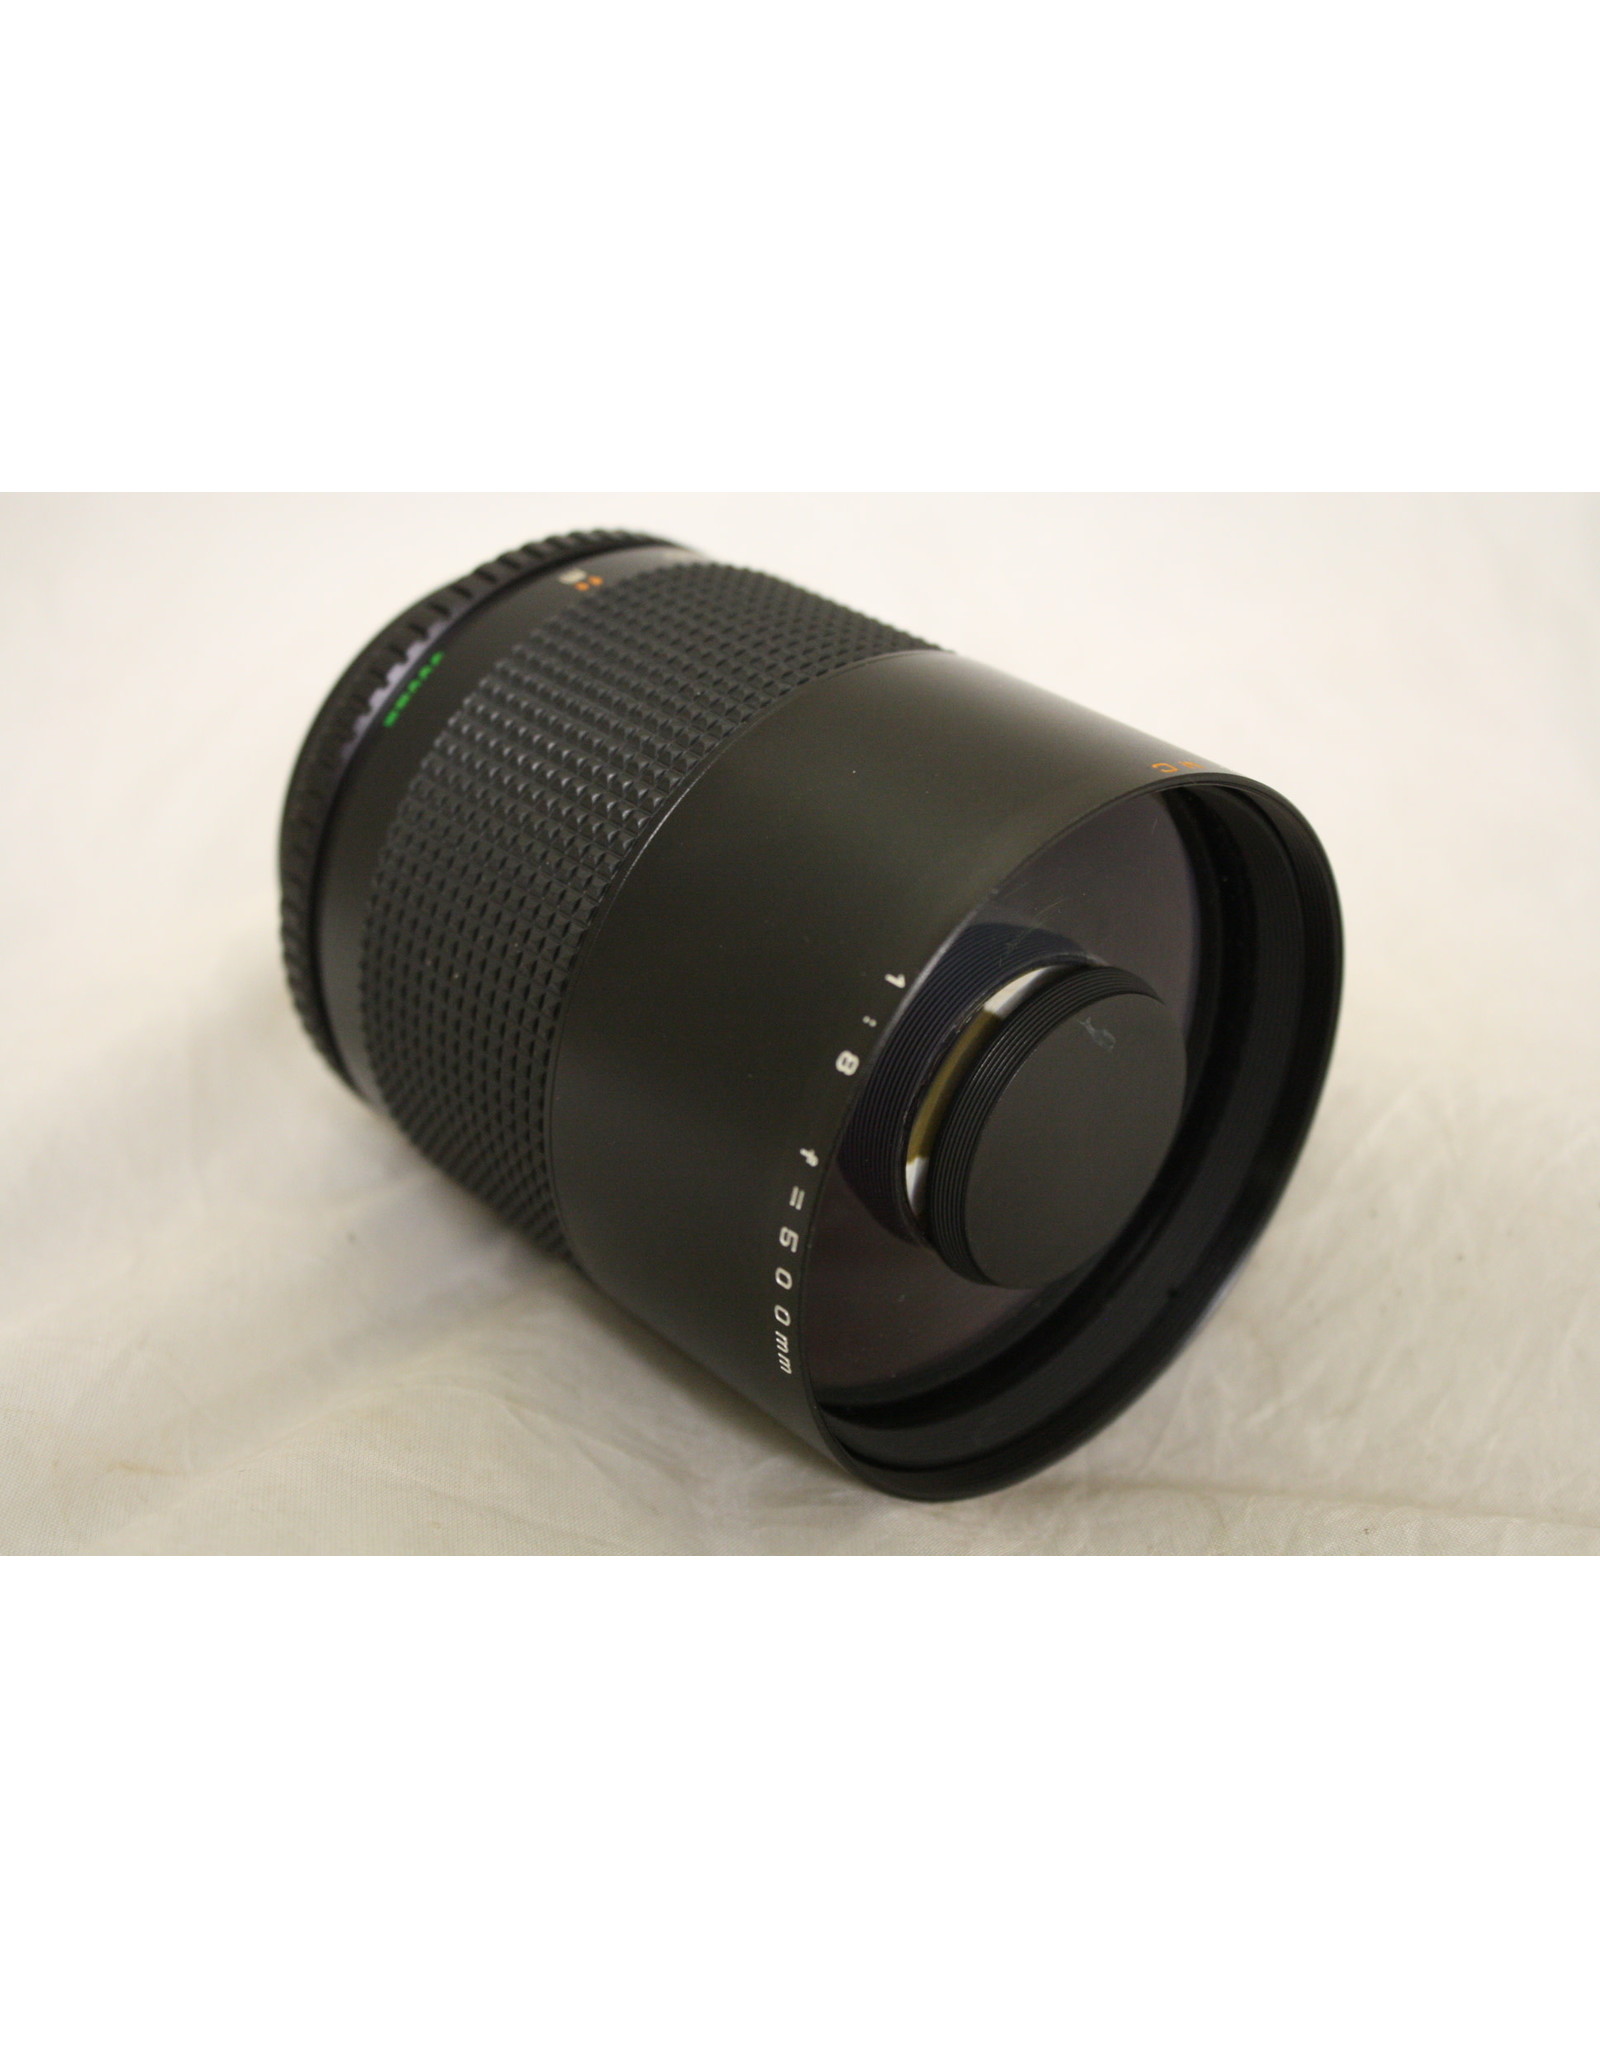 Zykkor Reflex MC 500mm Mirror Lens